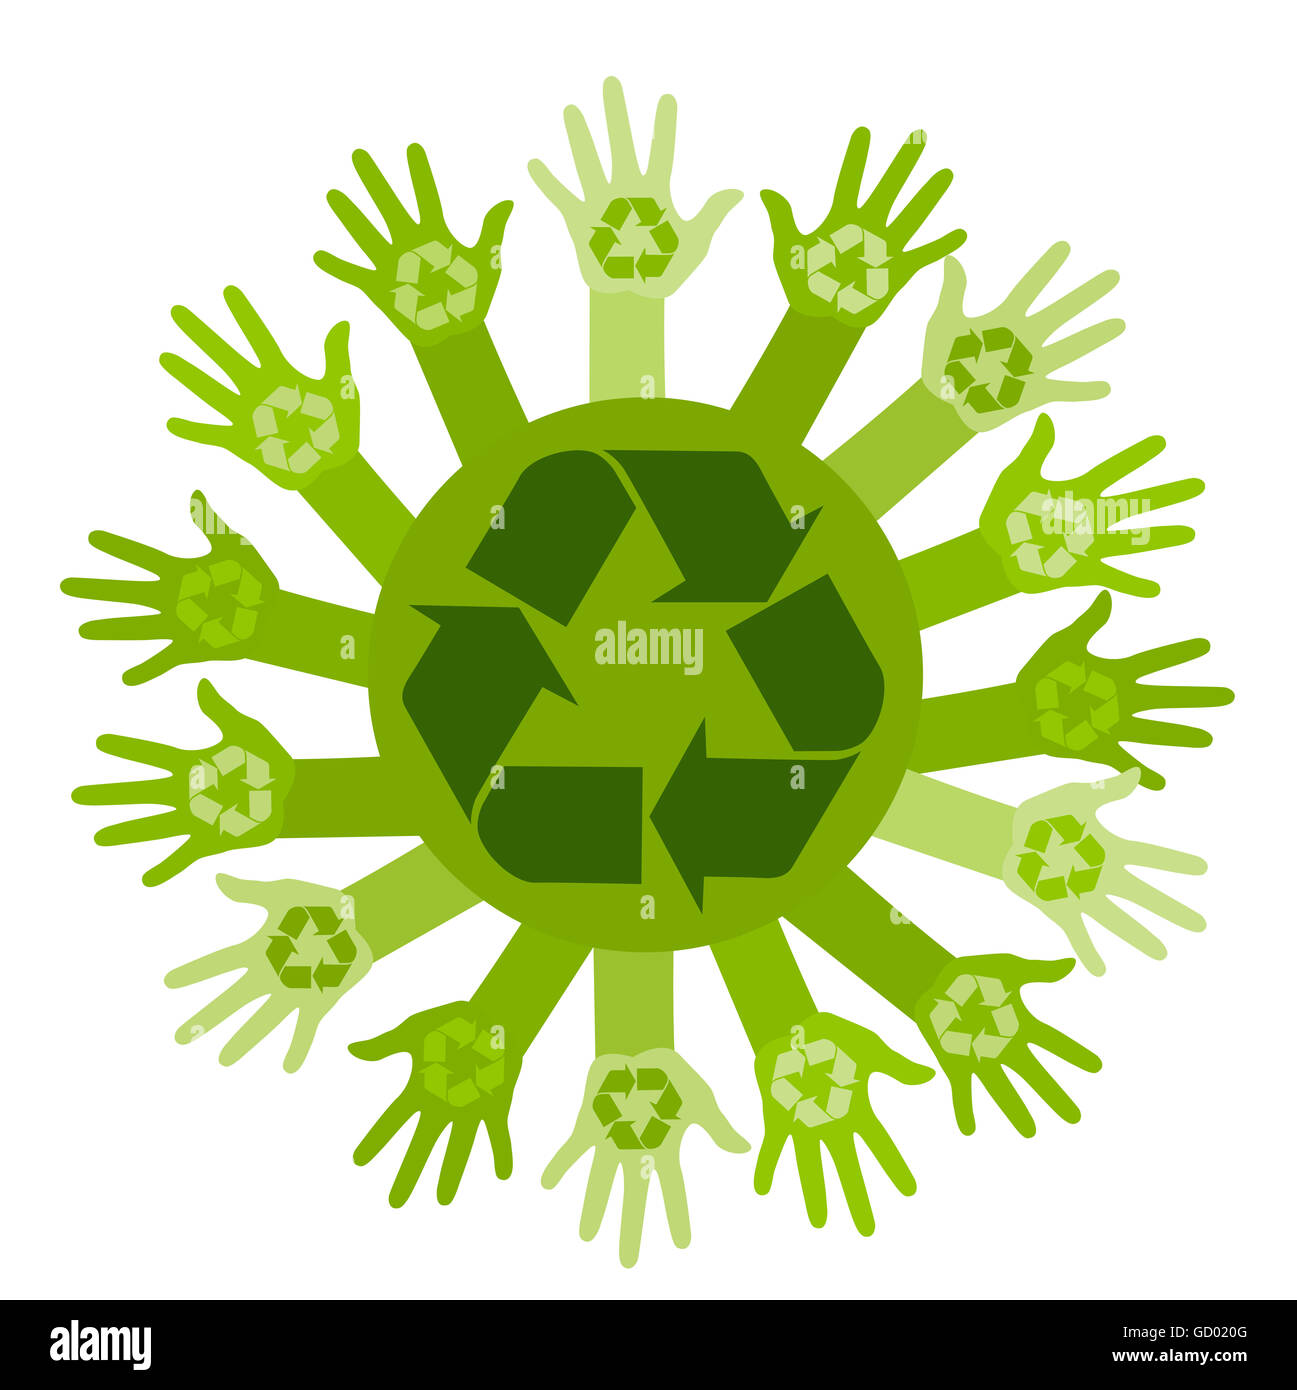 Ecología conceptual ilustración con manos y signo de reciclaje Foto de stock